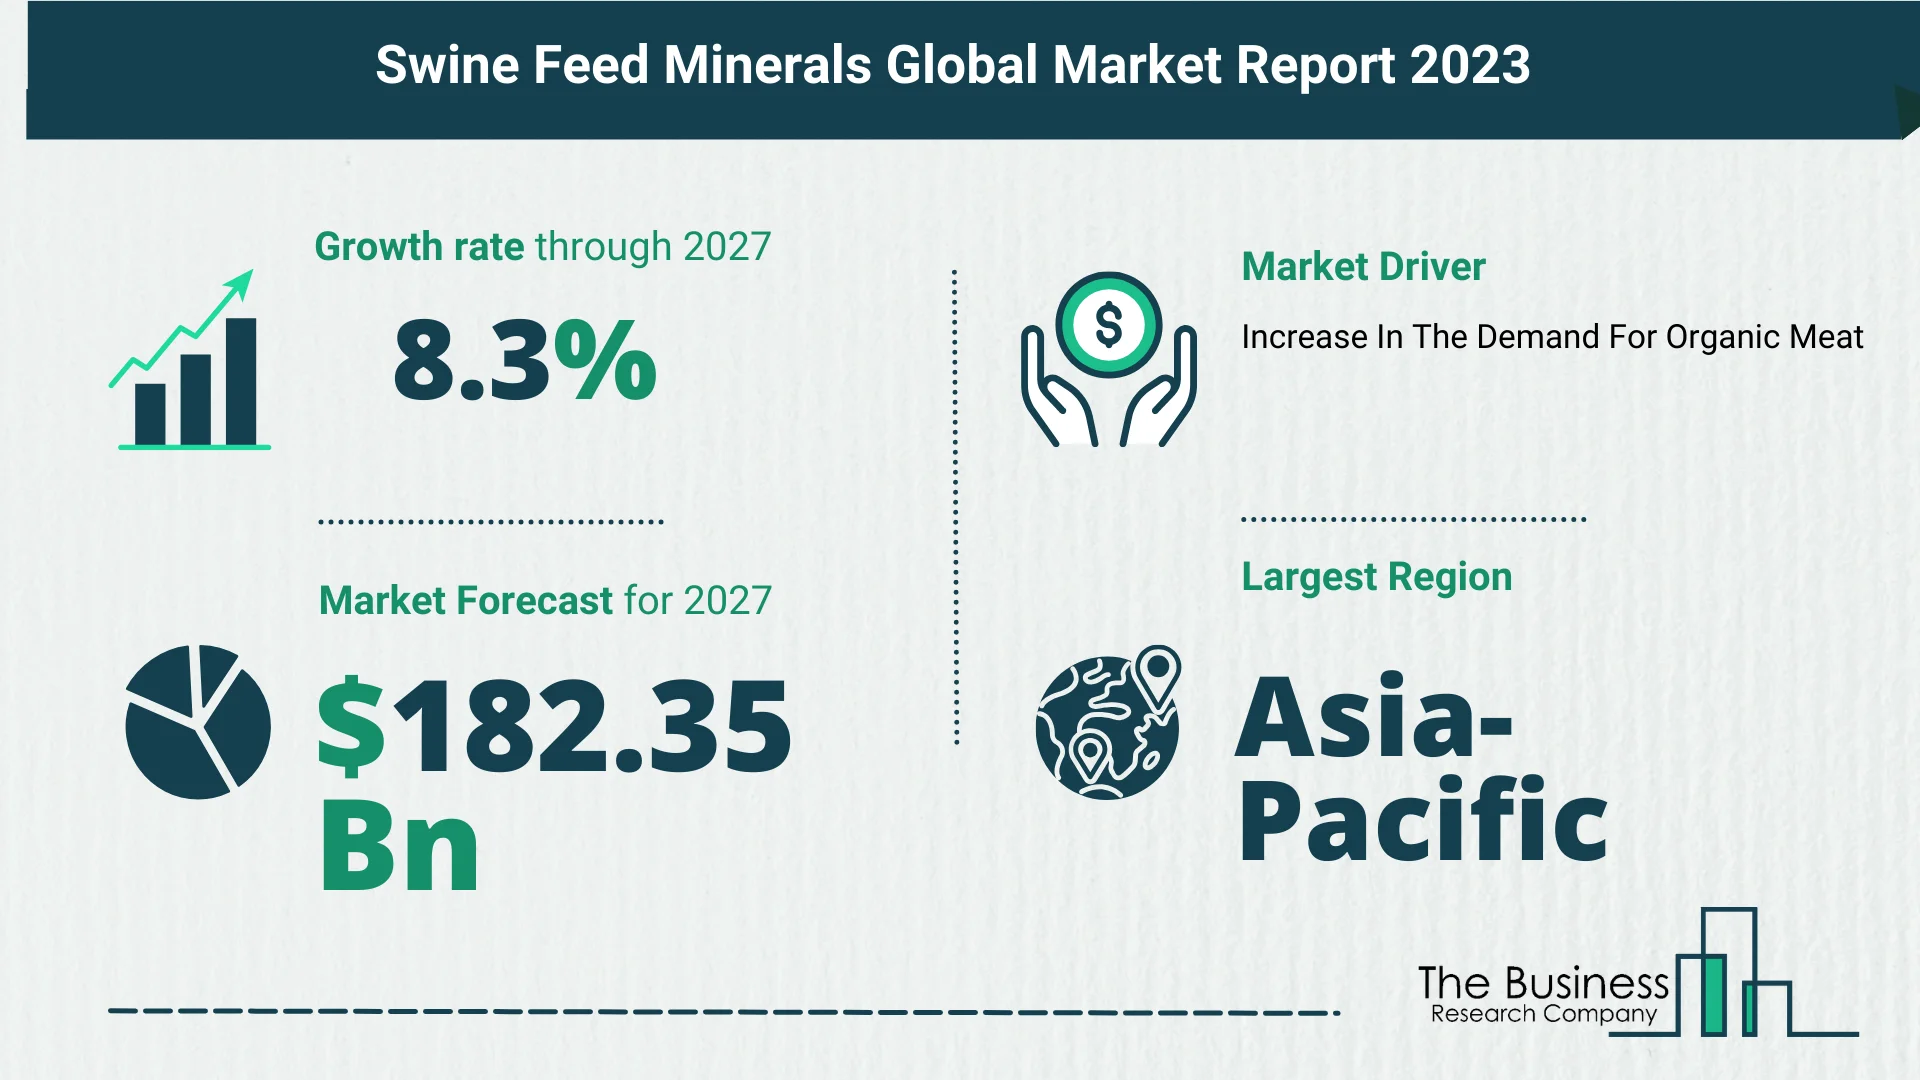 Global Swine Feed Minerals Market Size